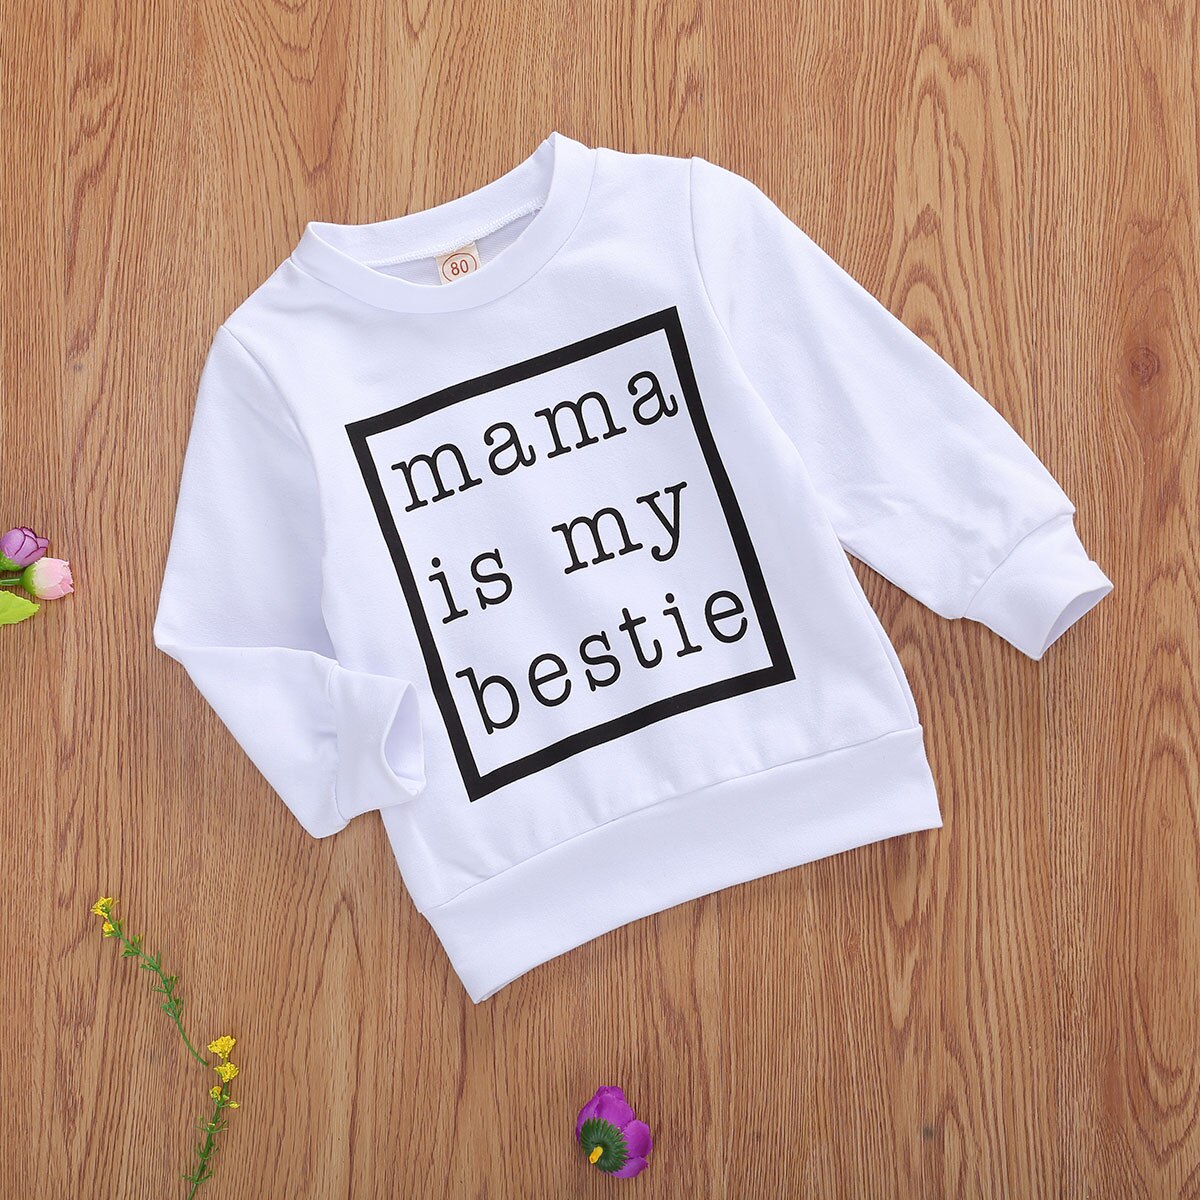 Mama is my bestie 0-24m baby baby girl boy sweatshirt toppe letter print langærmet sort / hvid top efterår bomuldstøj